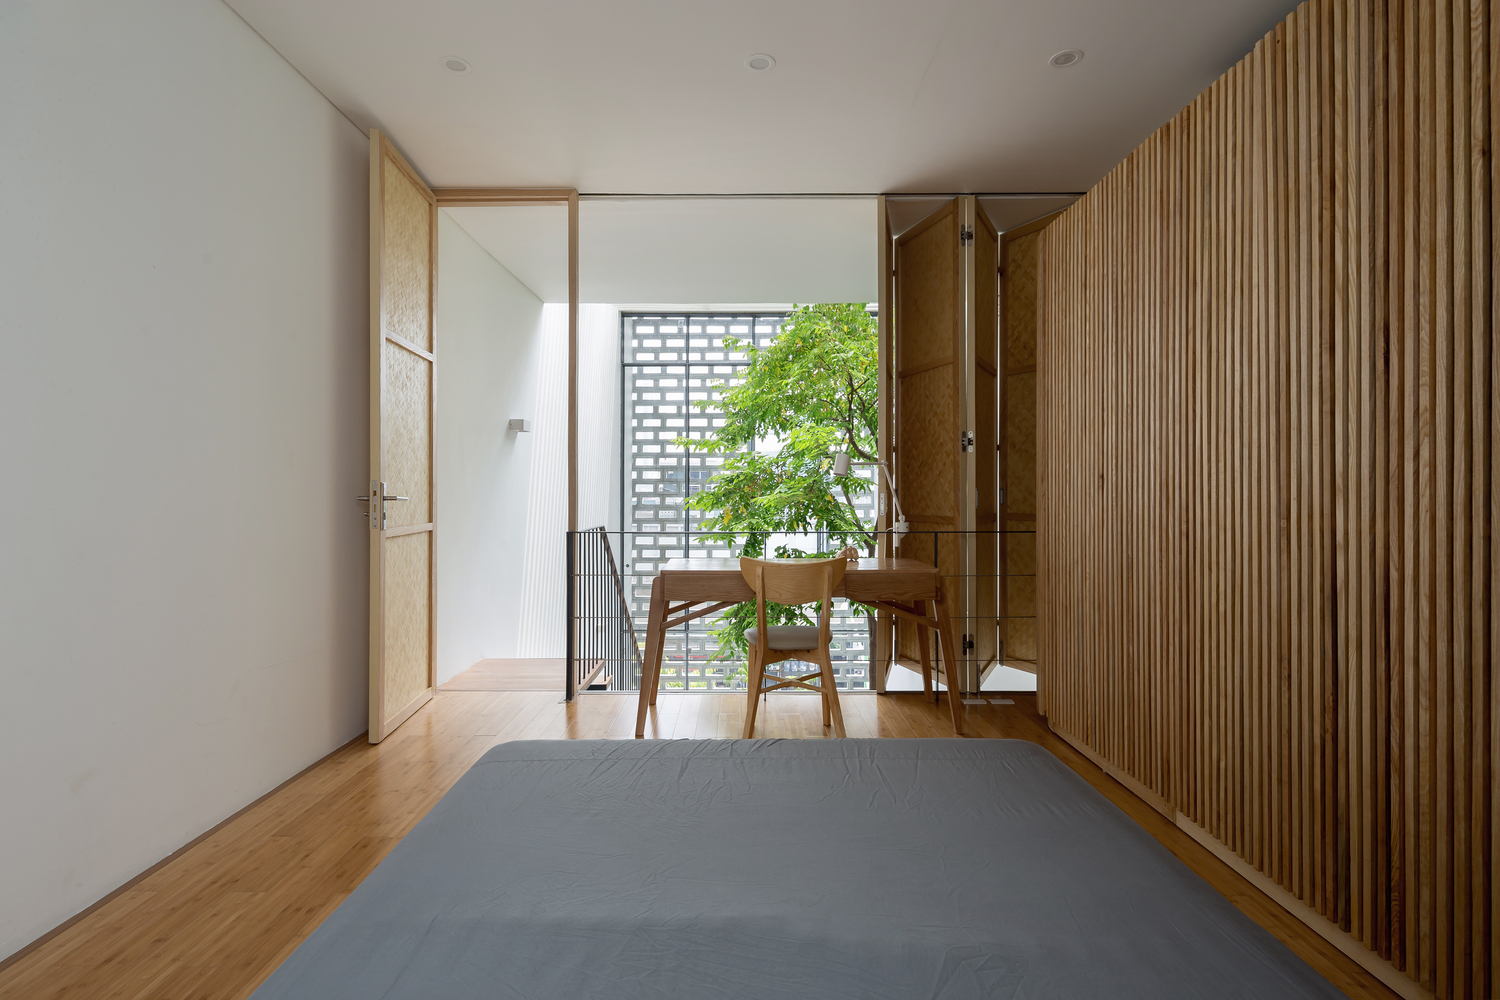 Hình ảnh bên trong một phòng ngủ hiện đại, sử dụng nội thất gỗ đơn giản, bàn ghế nhỏ đặt hướng nhìn ra khoảng thông tầng cầu thang.